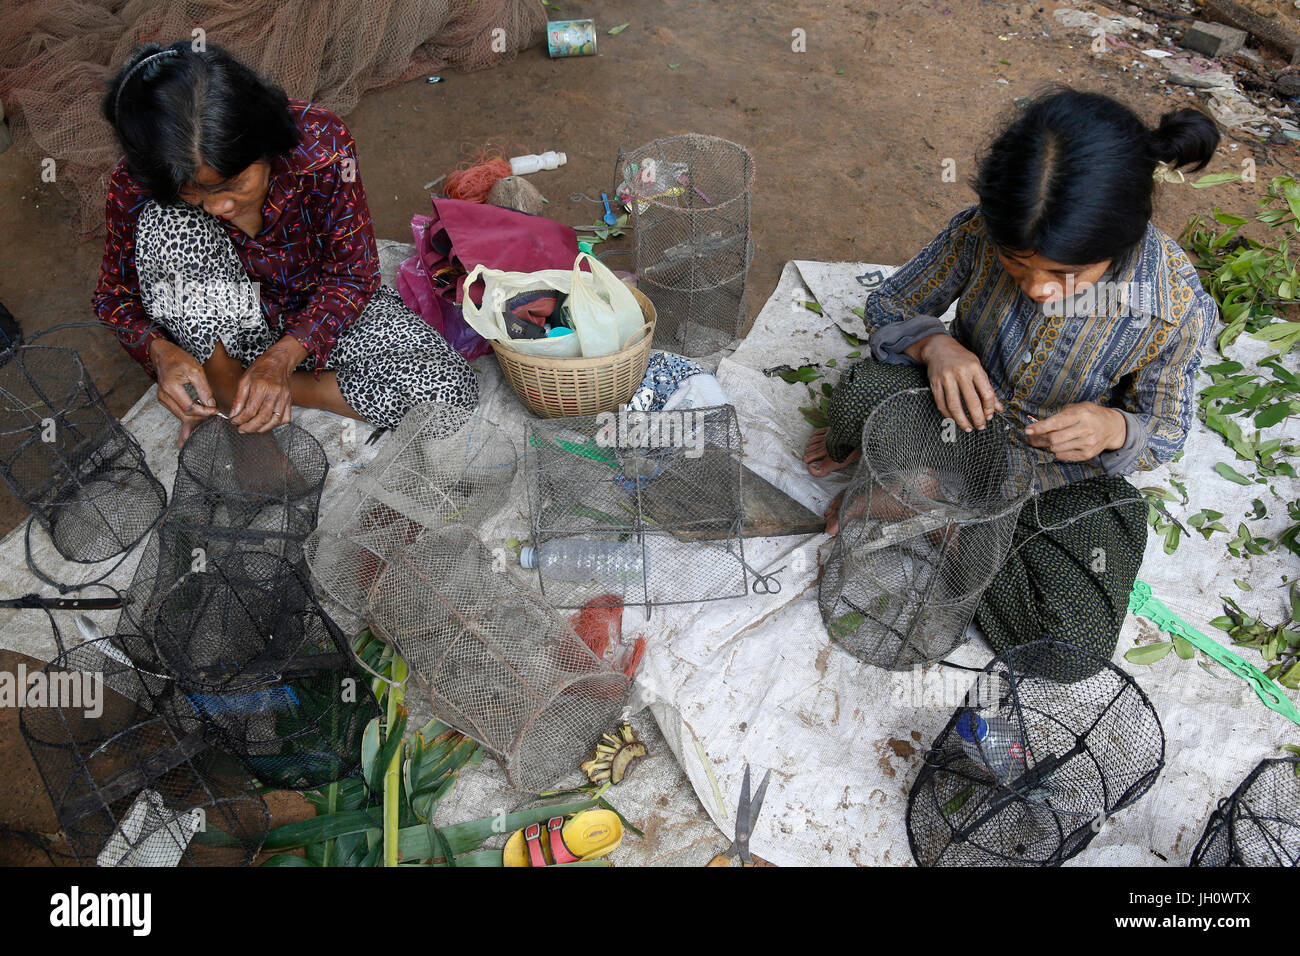 AMK microfinance clients repairing fishing equipment. Cambodia. Stock Photo